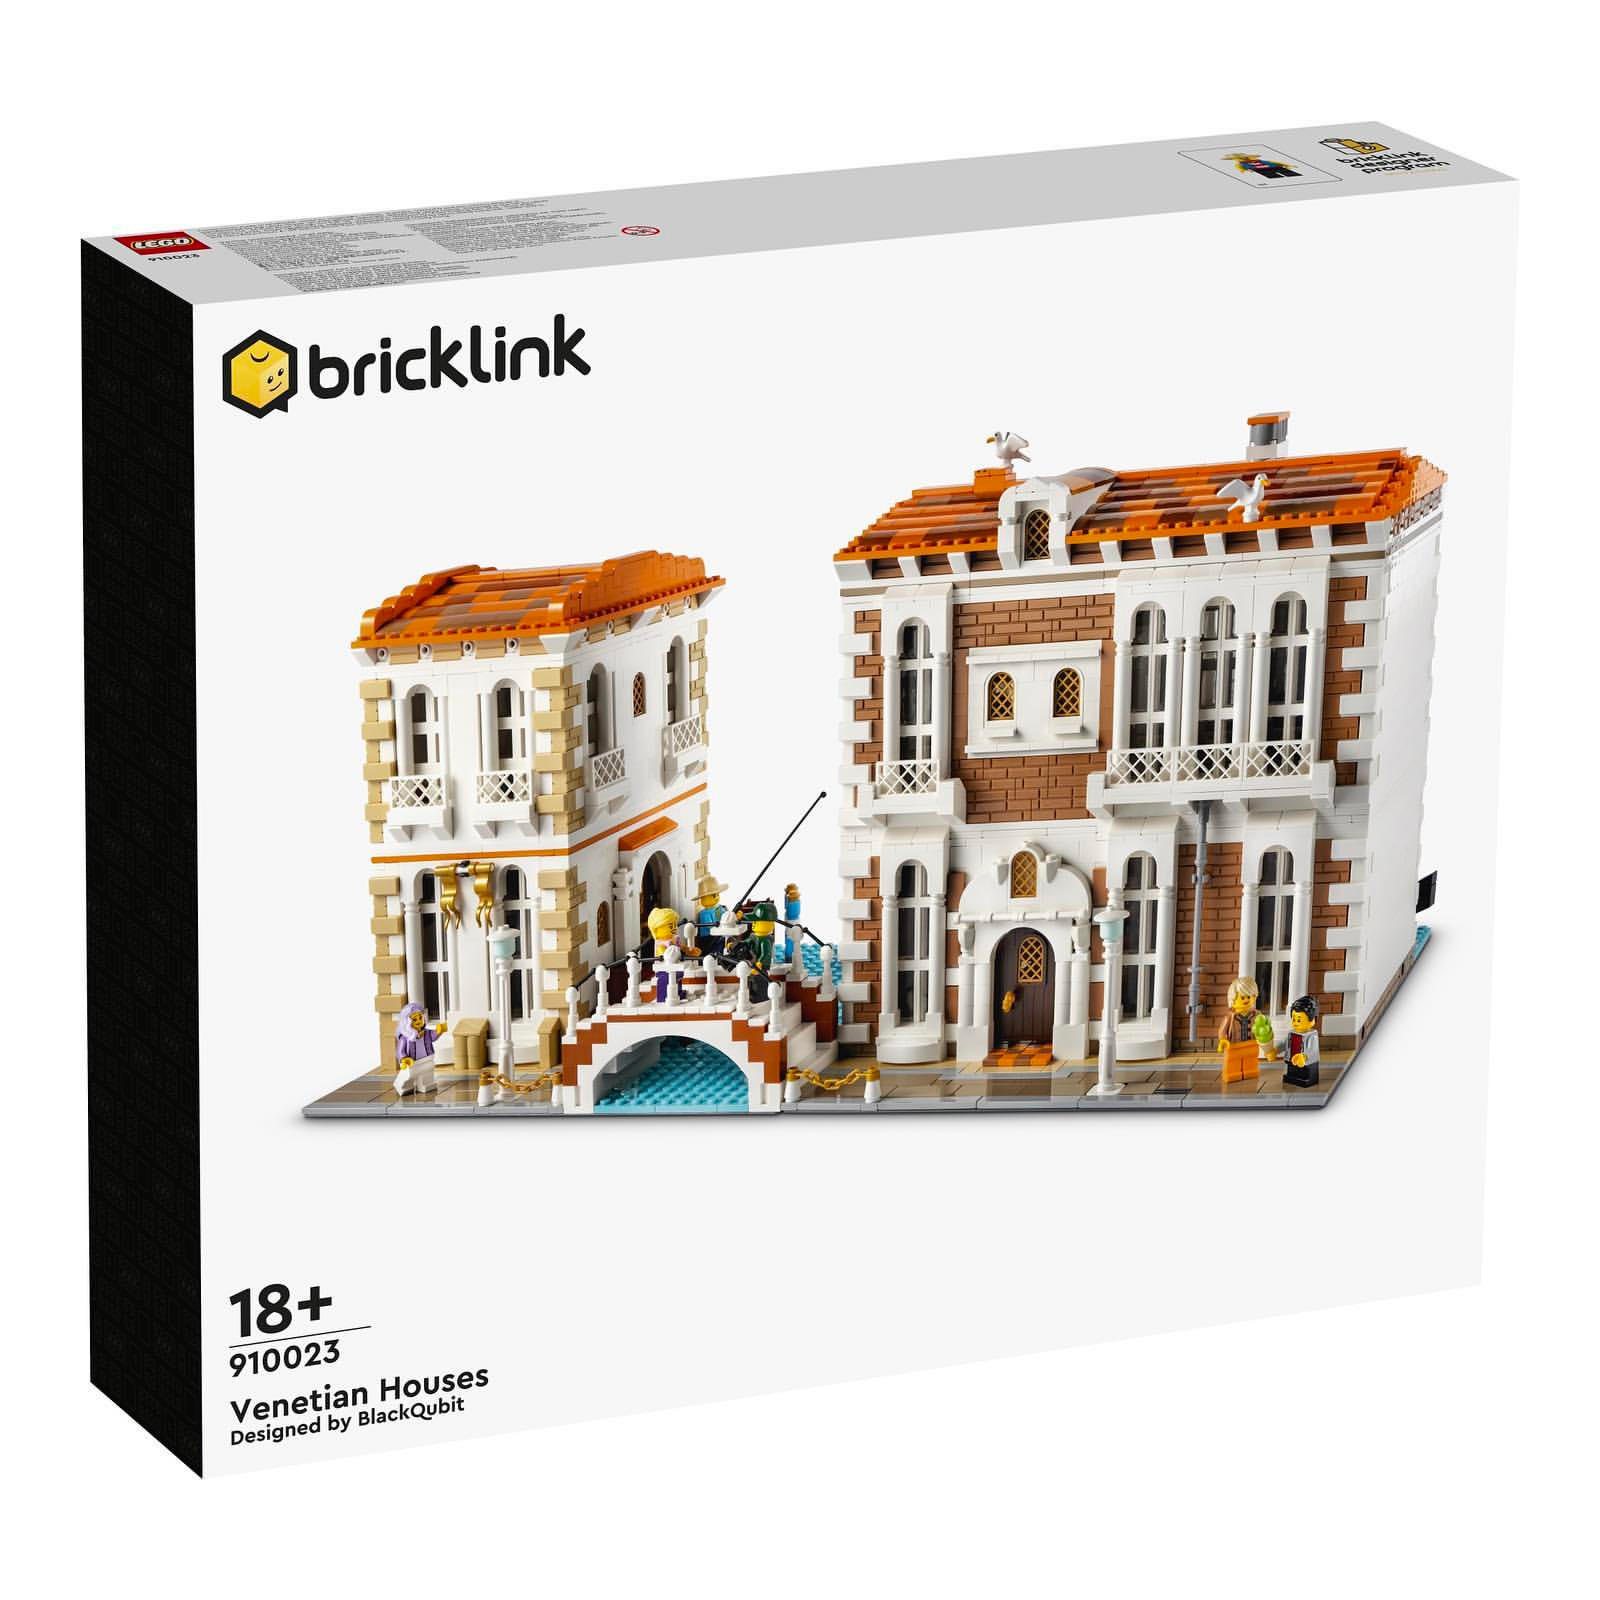 LEGO Designer Program Round 2 Official Set Images The Brick Fan